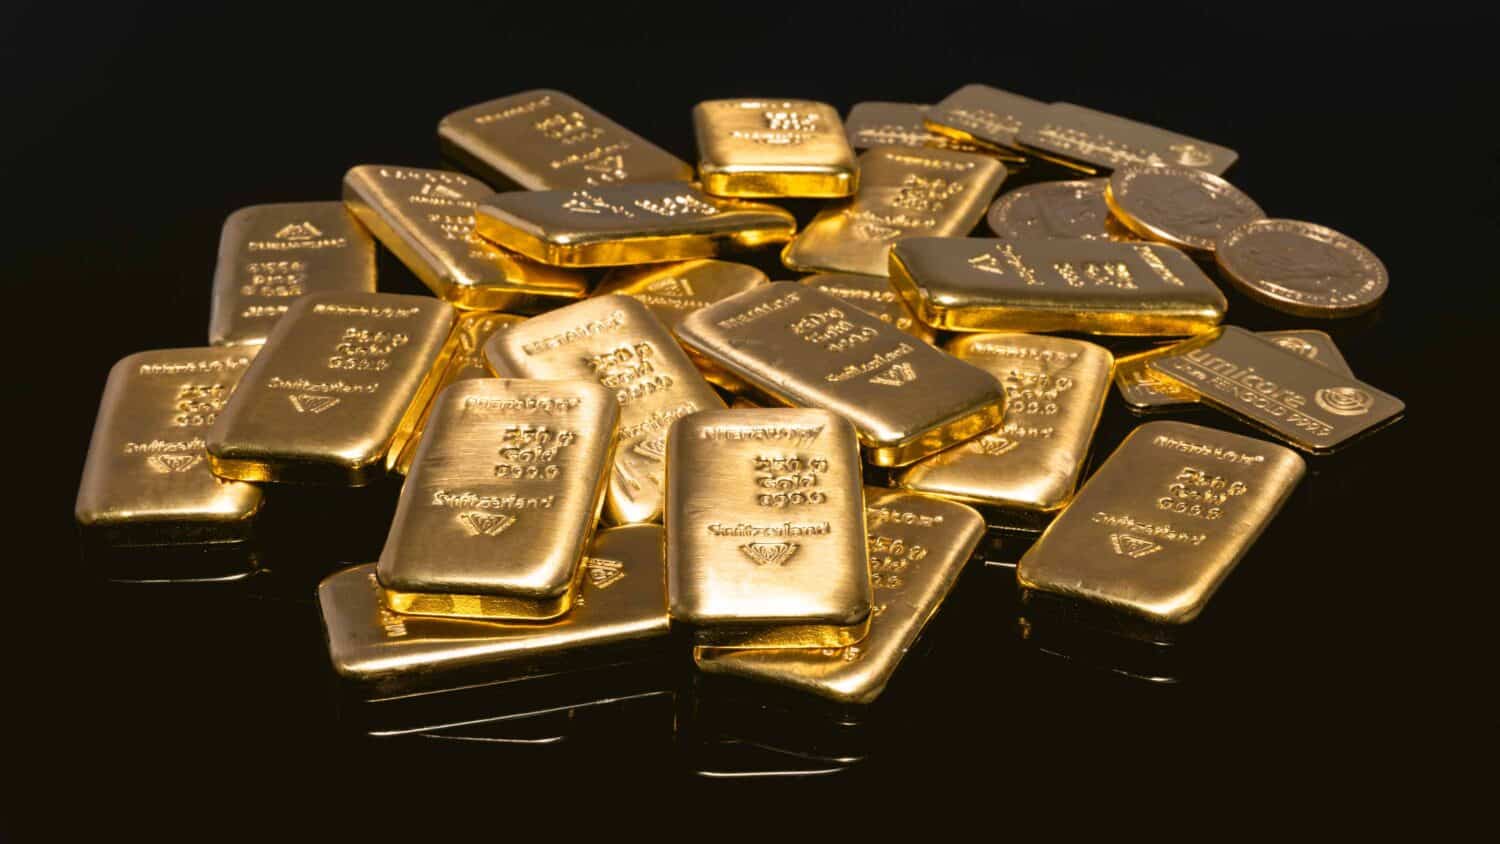 ราคาทองแท่ง 1 กรัม - น้ำหนักทองแท่ง - ทองแท่ง - น้ำหนักทองแท่ง